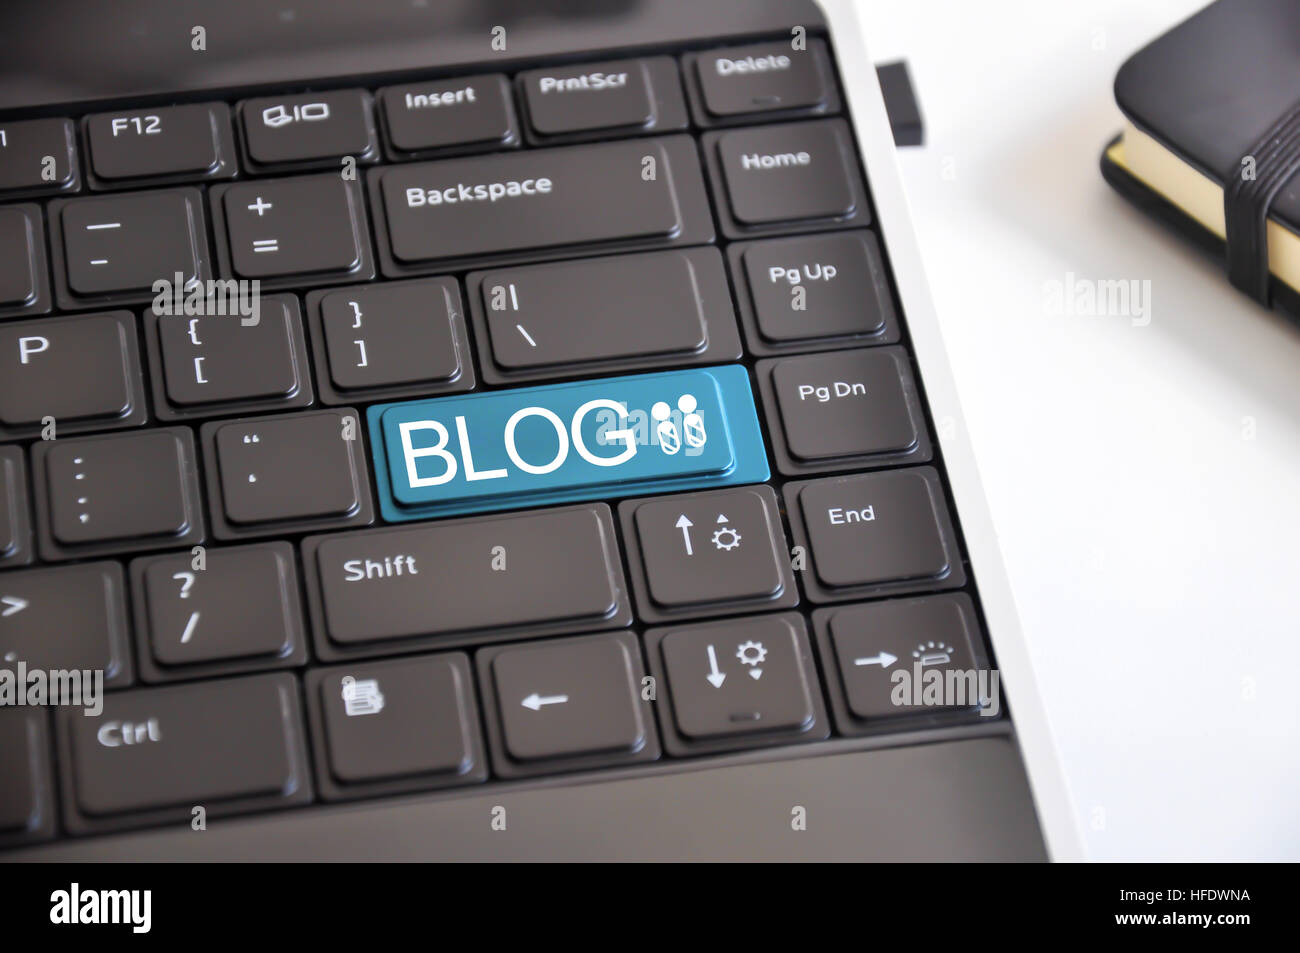 Crea tu blog y comenzar a escribir para comunicarse con el mundo Foto de stock